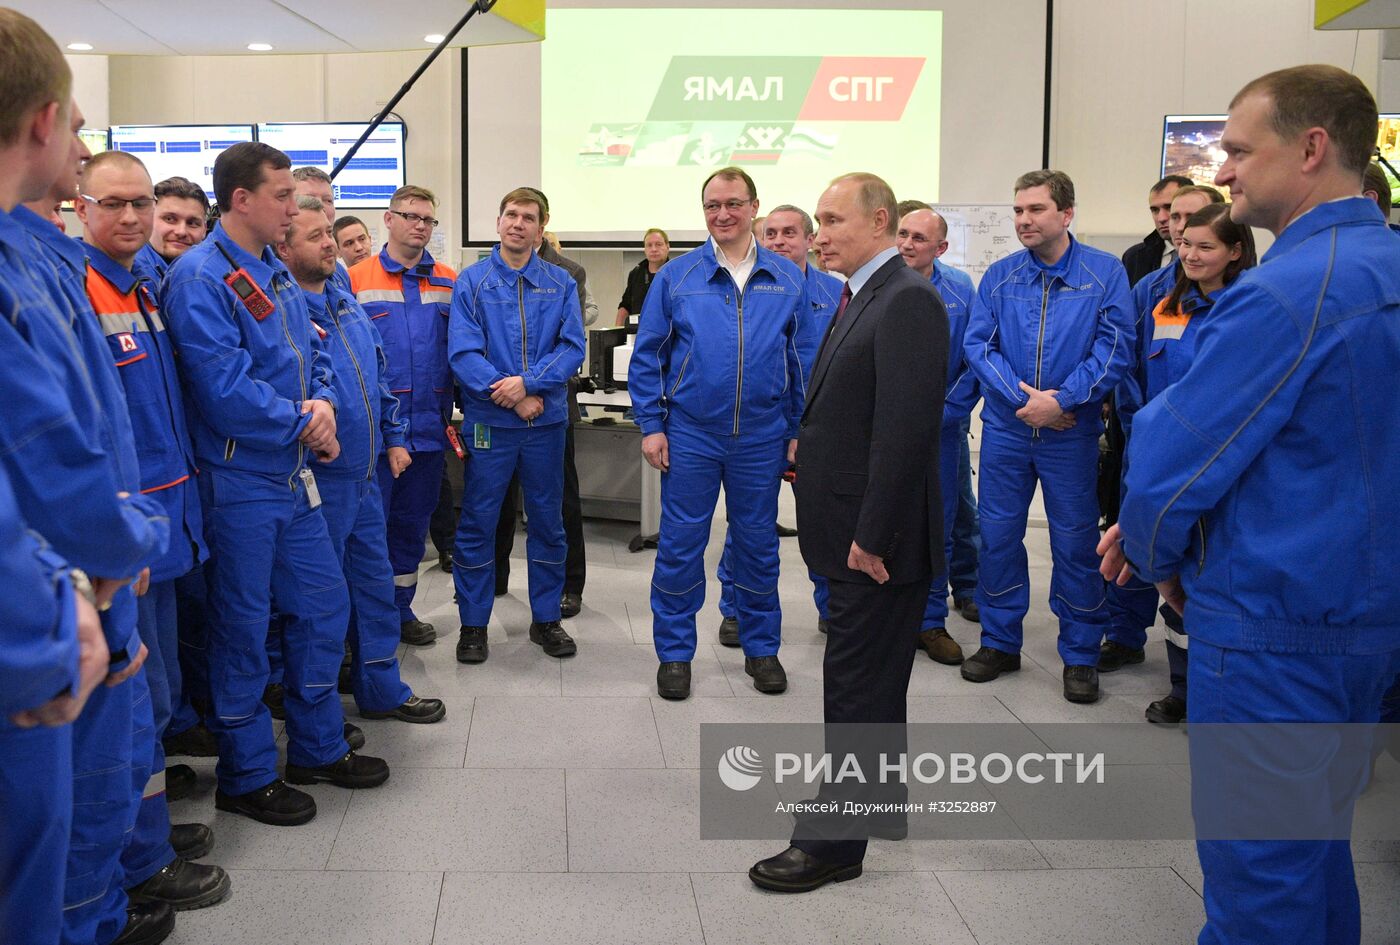 Рабочая поездка президента РФ В. Путина в Ямало-Ненецкий автономный округ